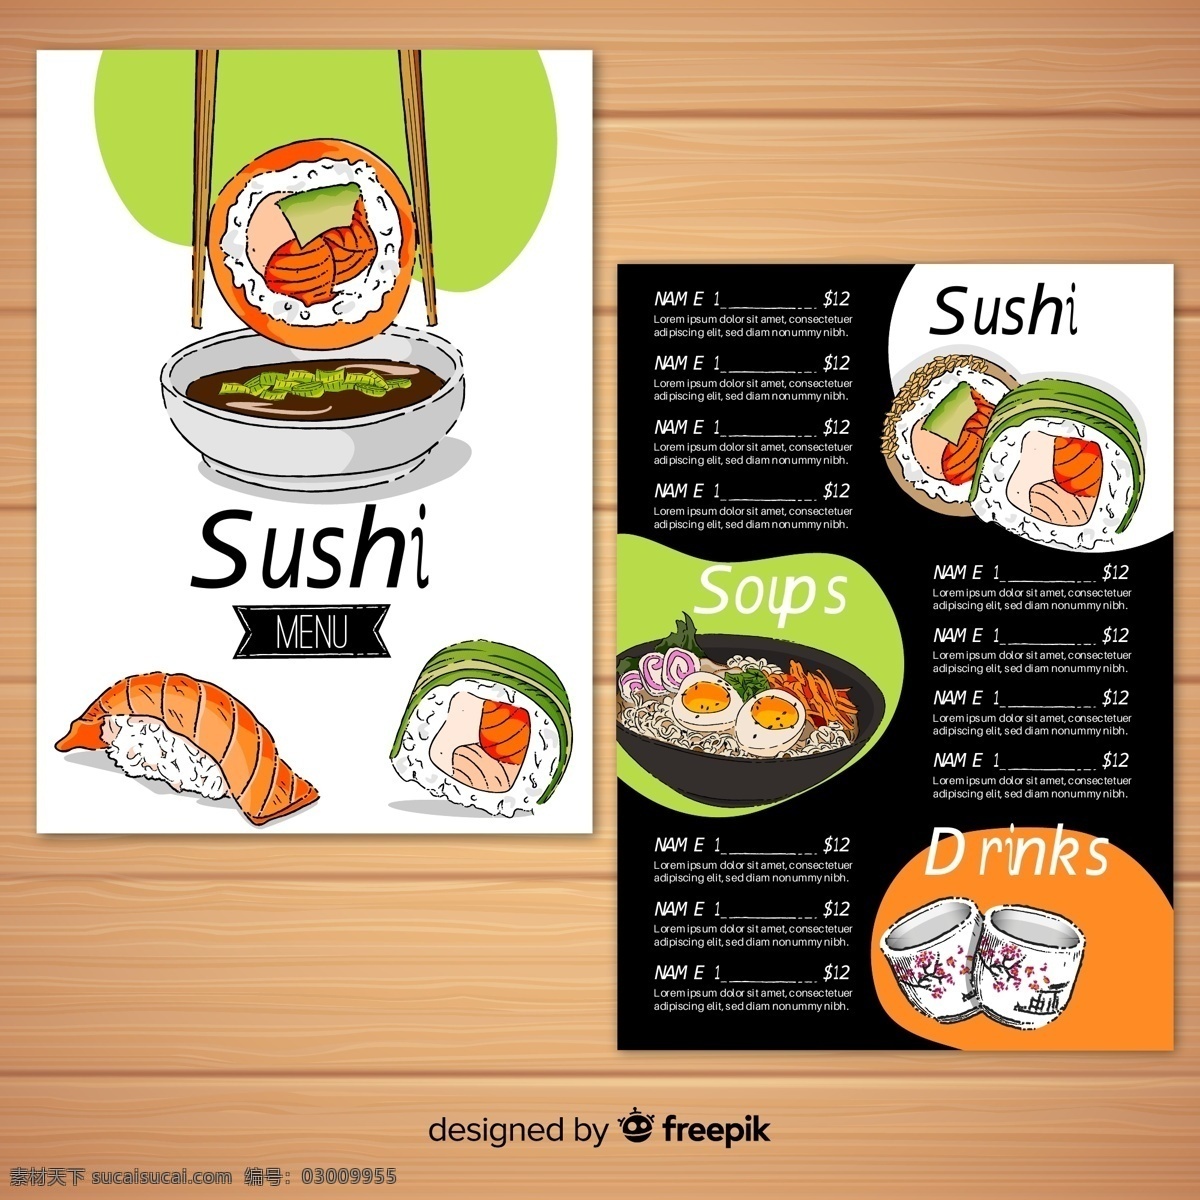 彩绘 美味 寿司 菜单 日本料理 餐饮 筷子 汤 饮品 茶饮 广告海报设计 菜单菜谱